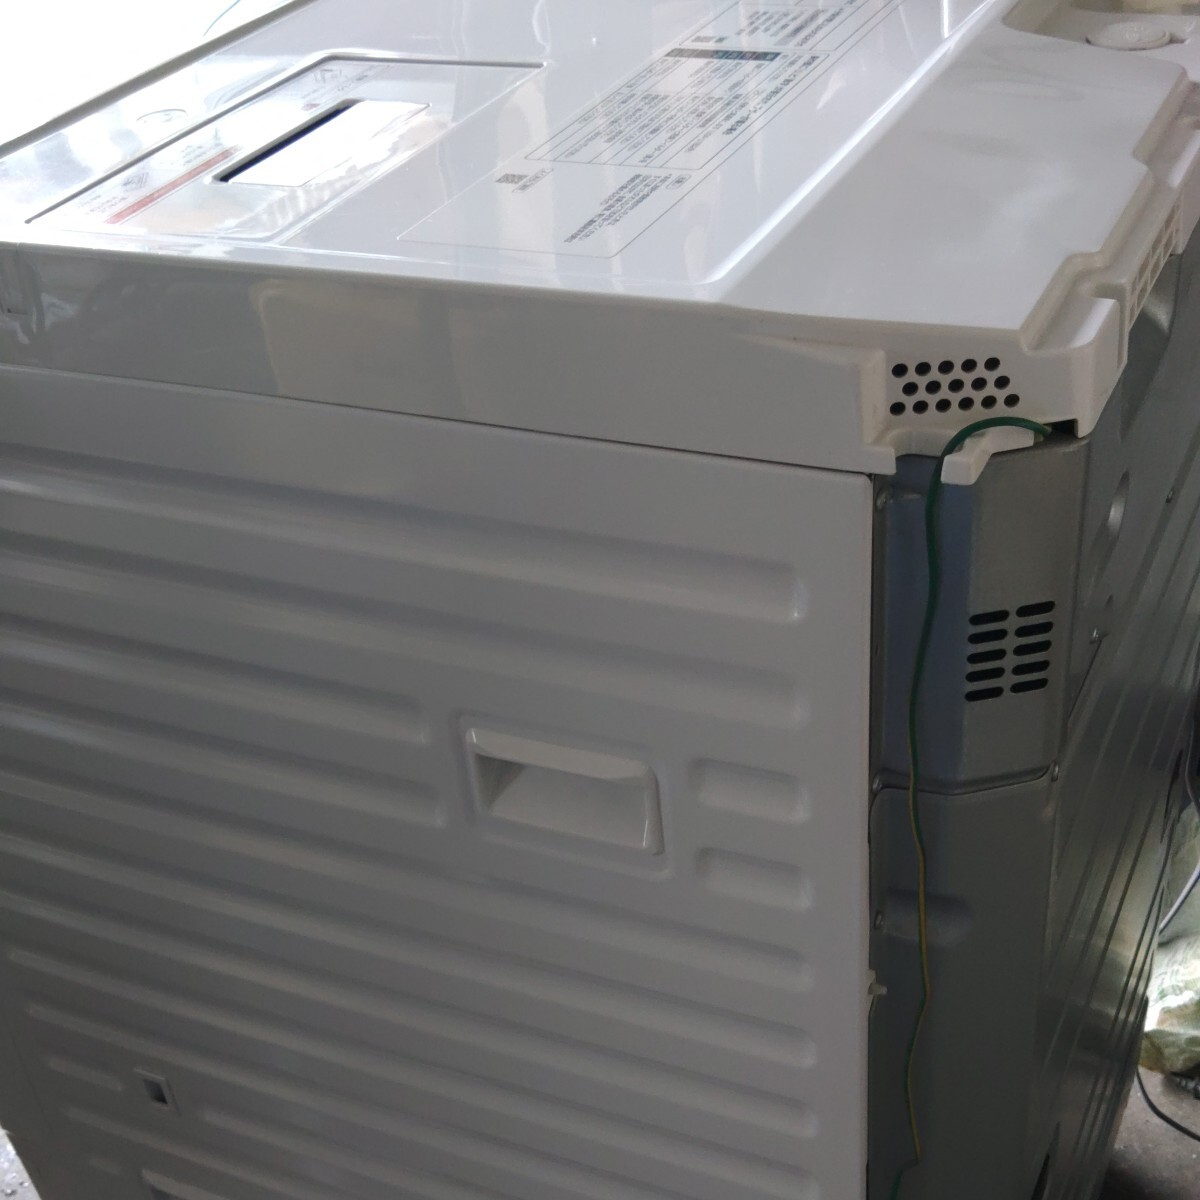 ドラム式洗濯乾燥機 パナソニック 左開きNA-VX700AL美品動作確認済2019年式 ヒートポンプ_画像10